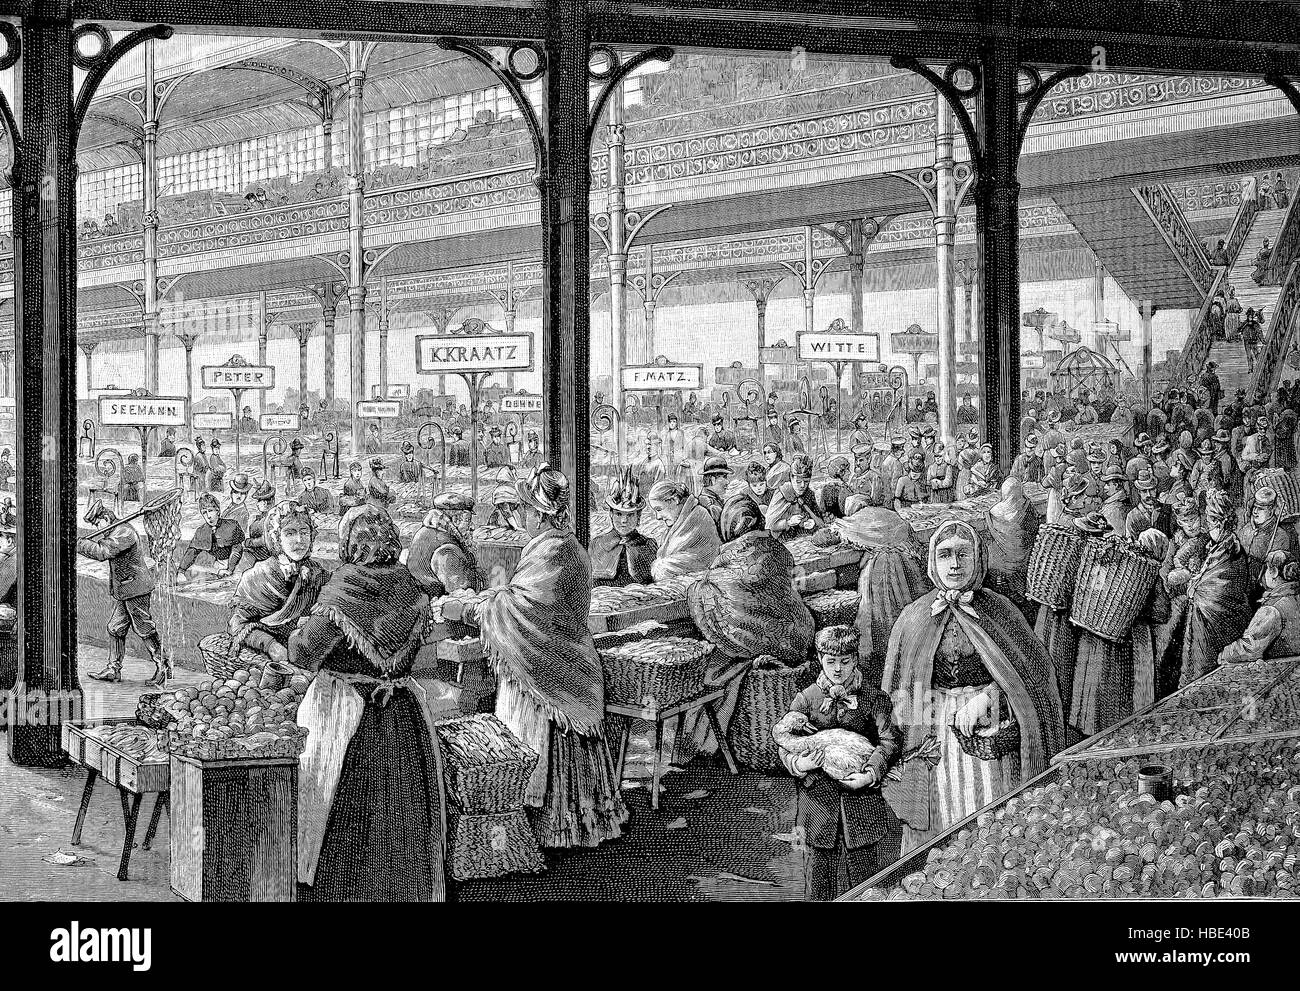 Marché journalier, scène du marché central hall à Alexanderplatz à Berlin, Allemagne, illustration, gravure sur bois de 1880 Banque D'Images